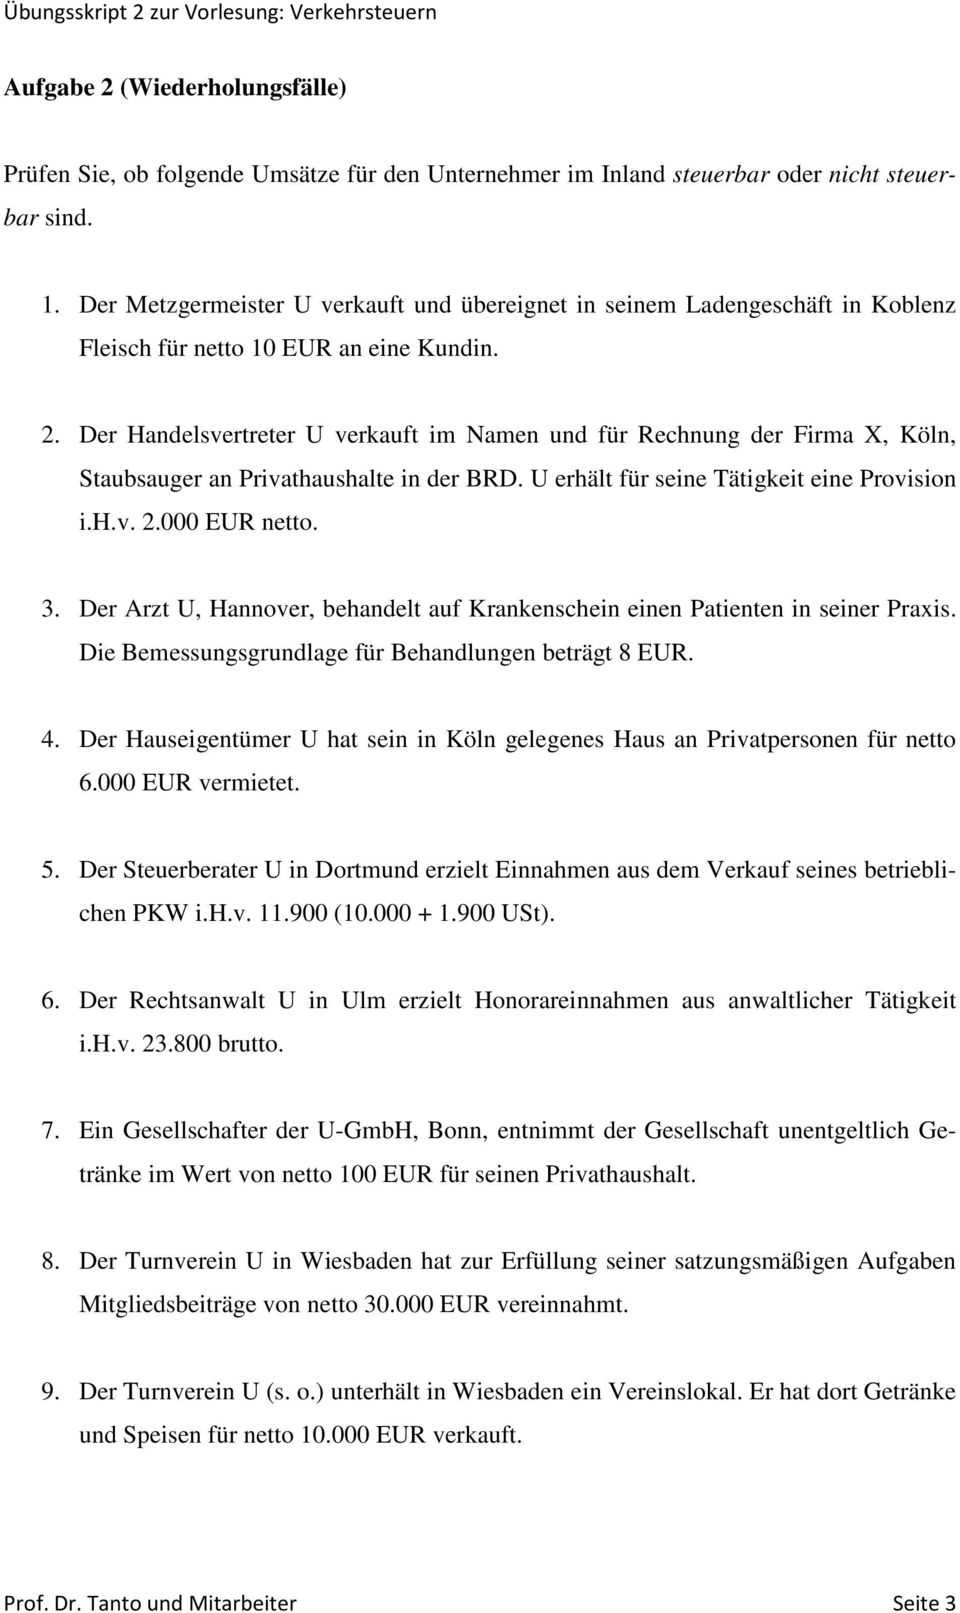 Der Handelsvertreter U verkauft im Namen und für Rechnung der Firma X, Köln, Staubsauger an Privathaushalte in der BRD. U erhält für seine Tätigkeit eine Provision i.h.v. 2.000 EUR netto. 3.